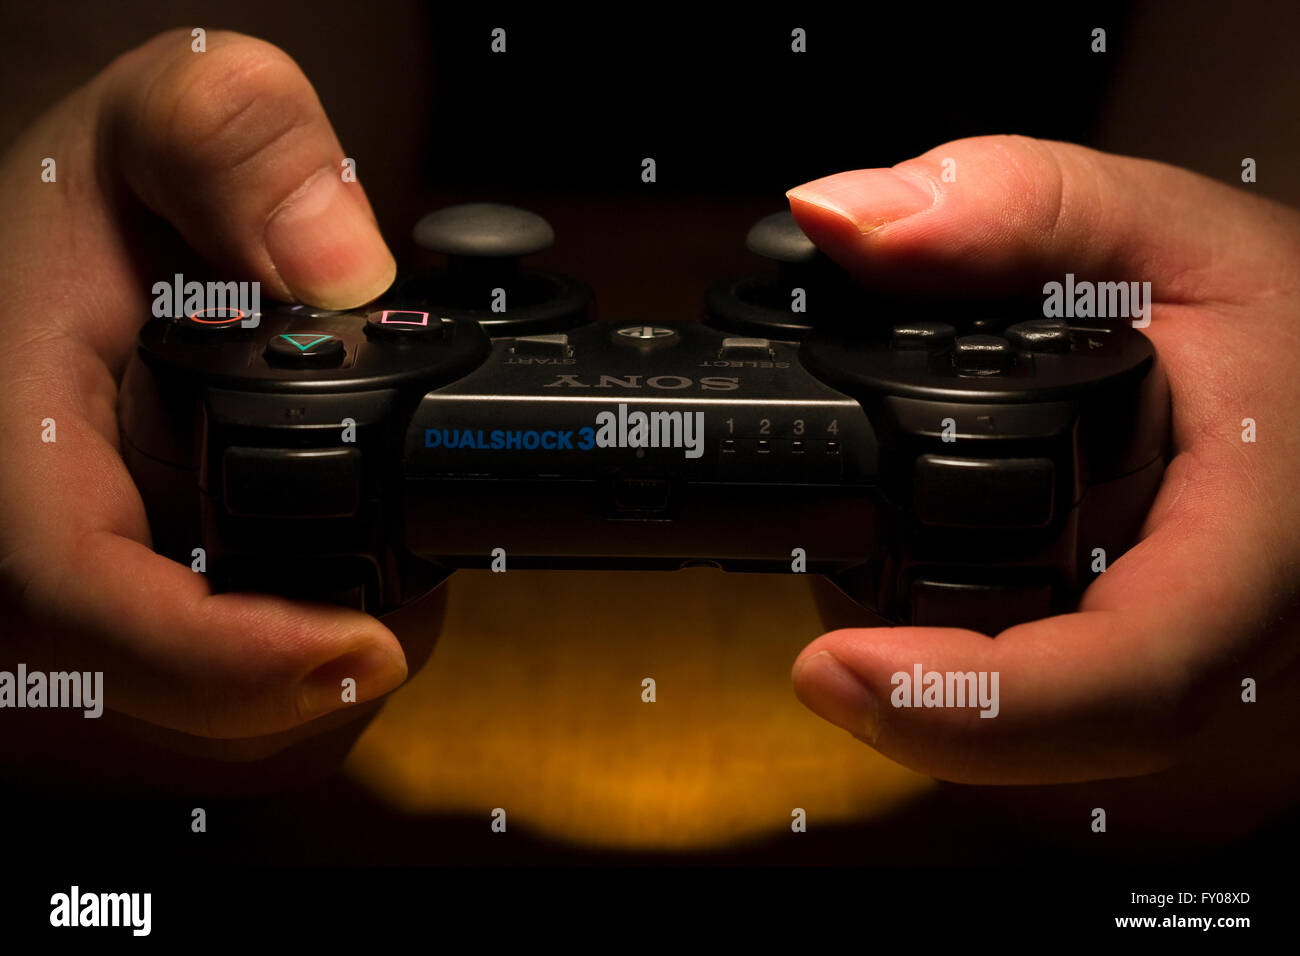 Zwei Hände halten ein drahtloses SONY Playstation Dual Shock 3 Controller, während der Daumen die Tasten drücken Stockfoto